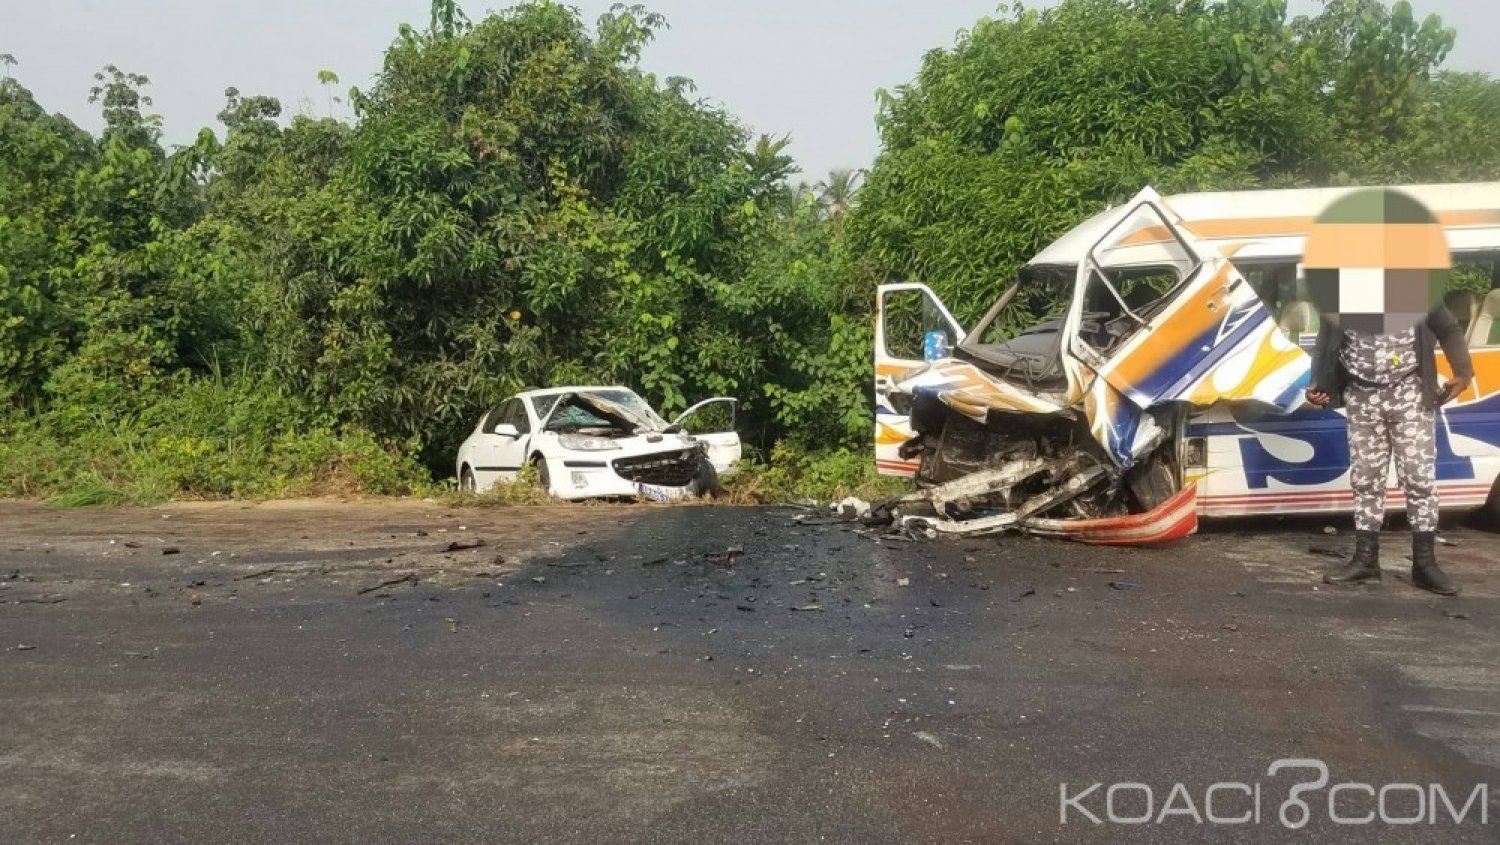 Côte d'Ivoire: Accident meurtrier sur la route de Jacqueville, 02 morts et des blessés graves